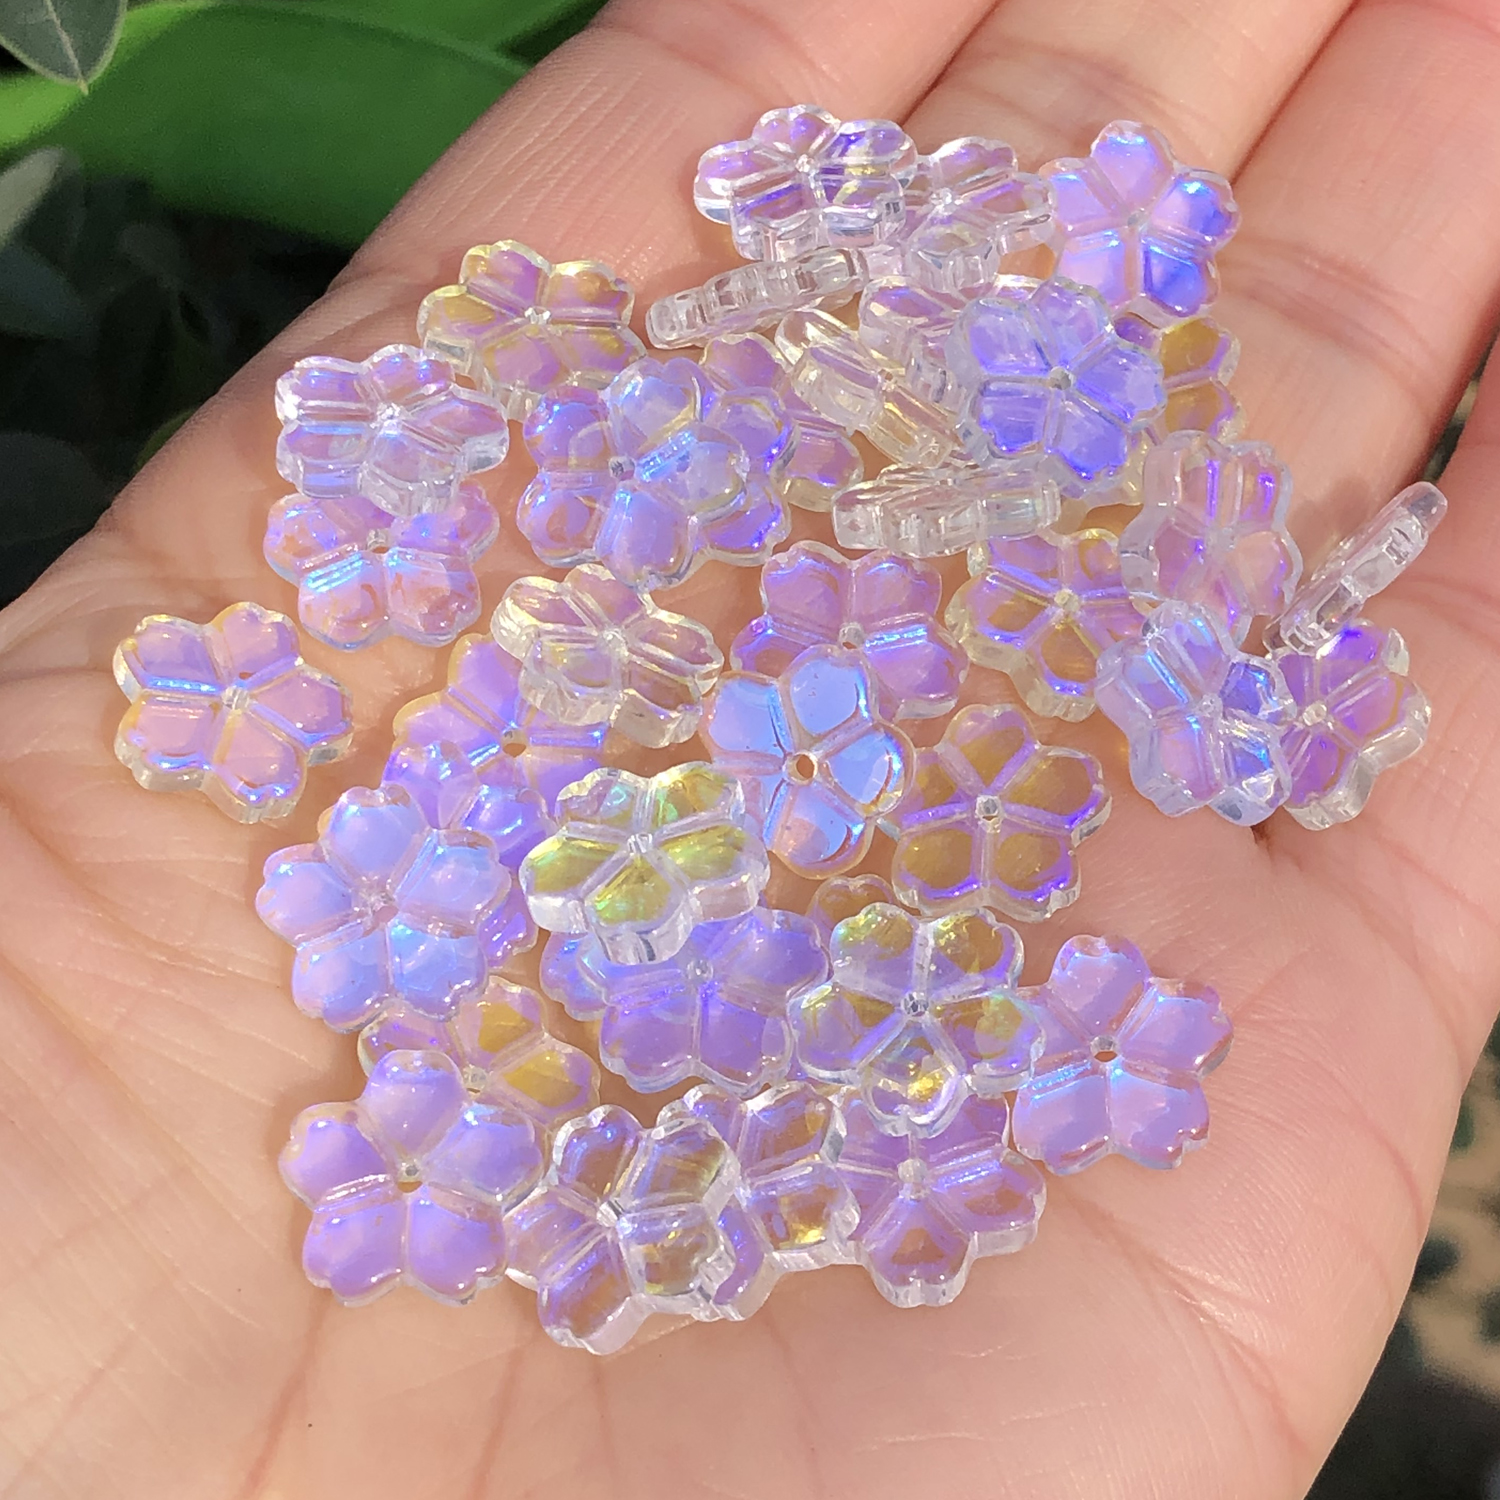 Czech Glass Beaded Chain Purple Flower - 1 Foot - Bead Inspirations